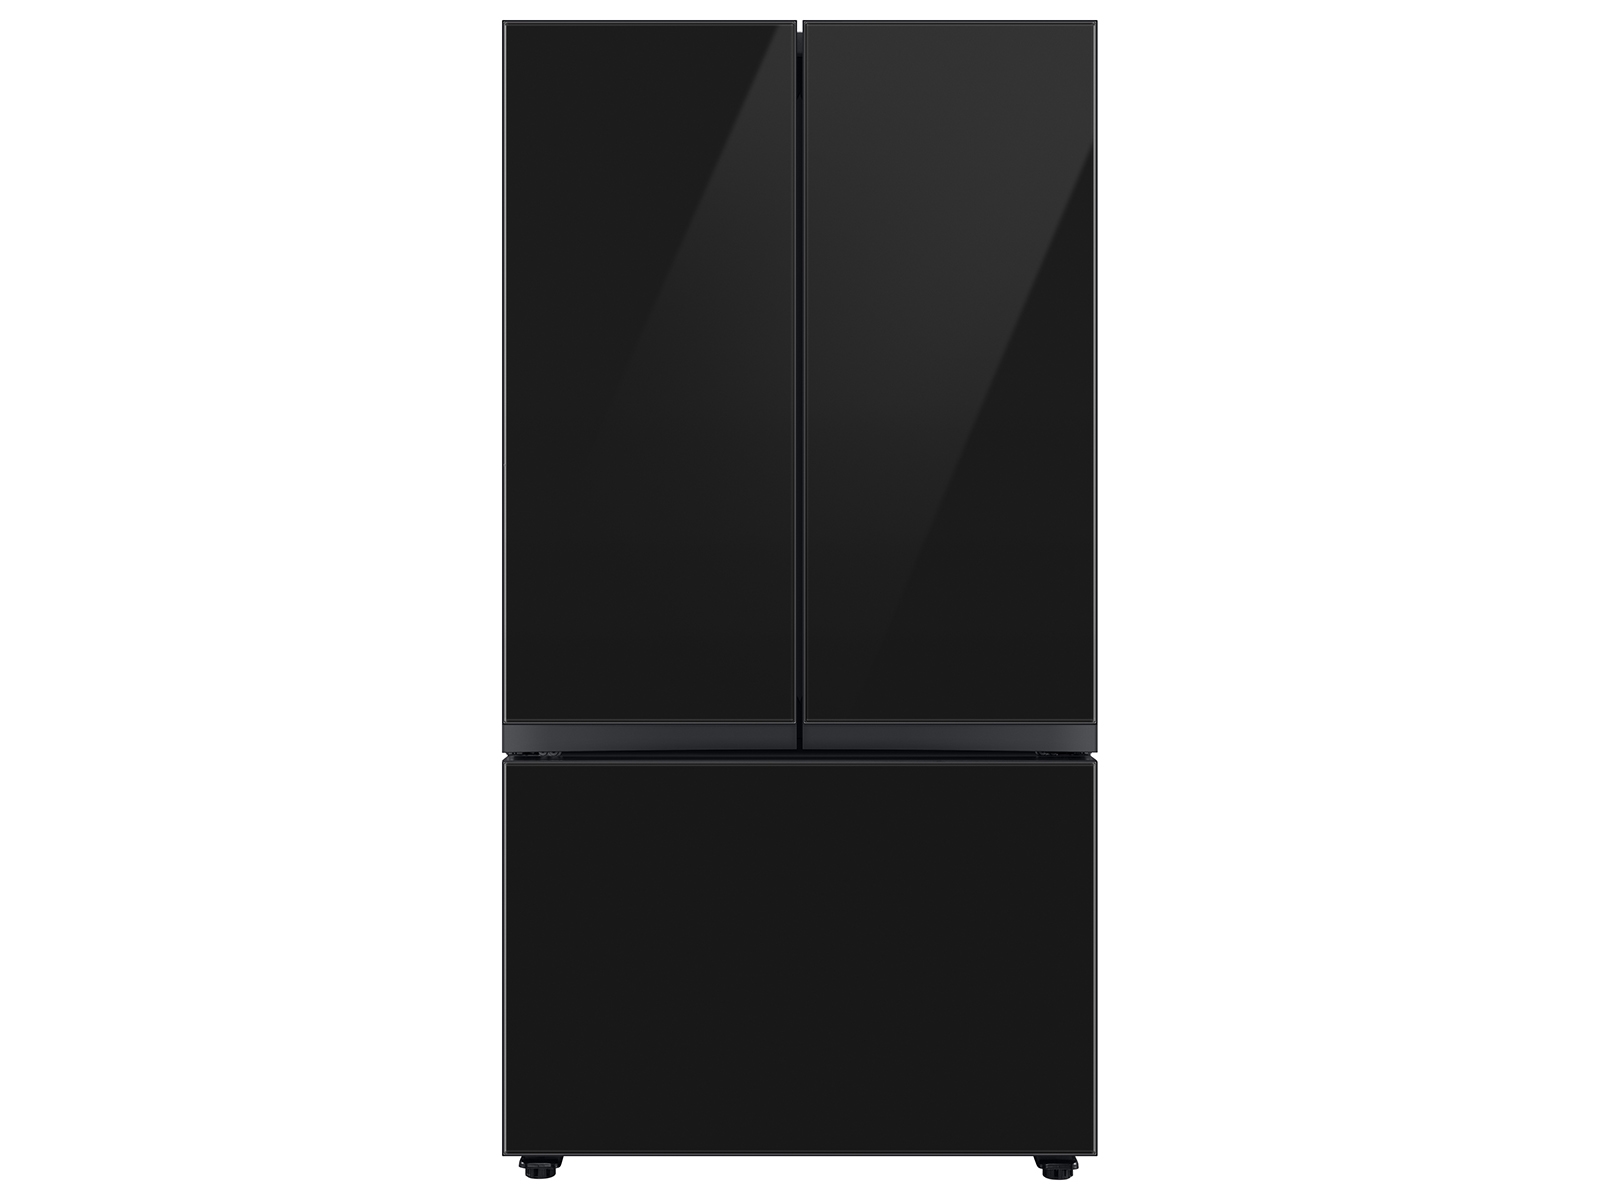 Samsung Bespoke 3-Door French Door Refrigerator (24 cu. ft.) with Beverage Center™ in Charcoal Glass(BNDL-1650310148208)